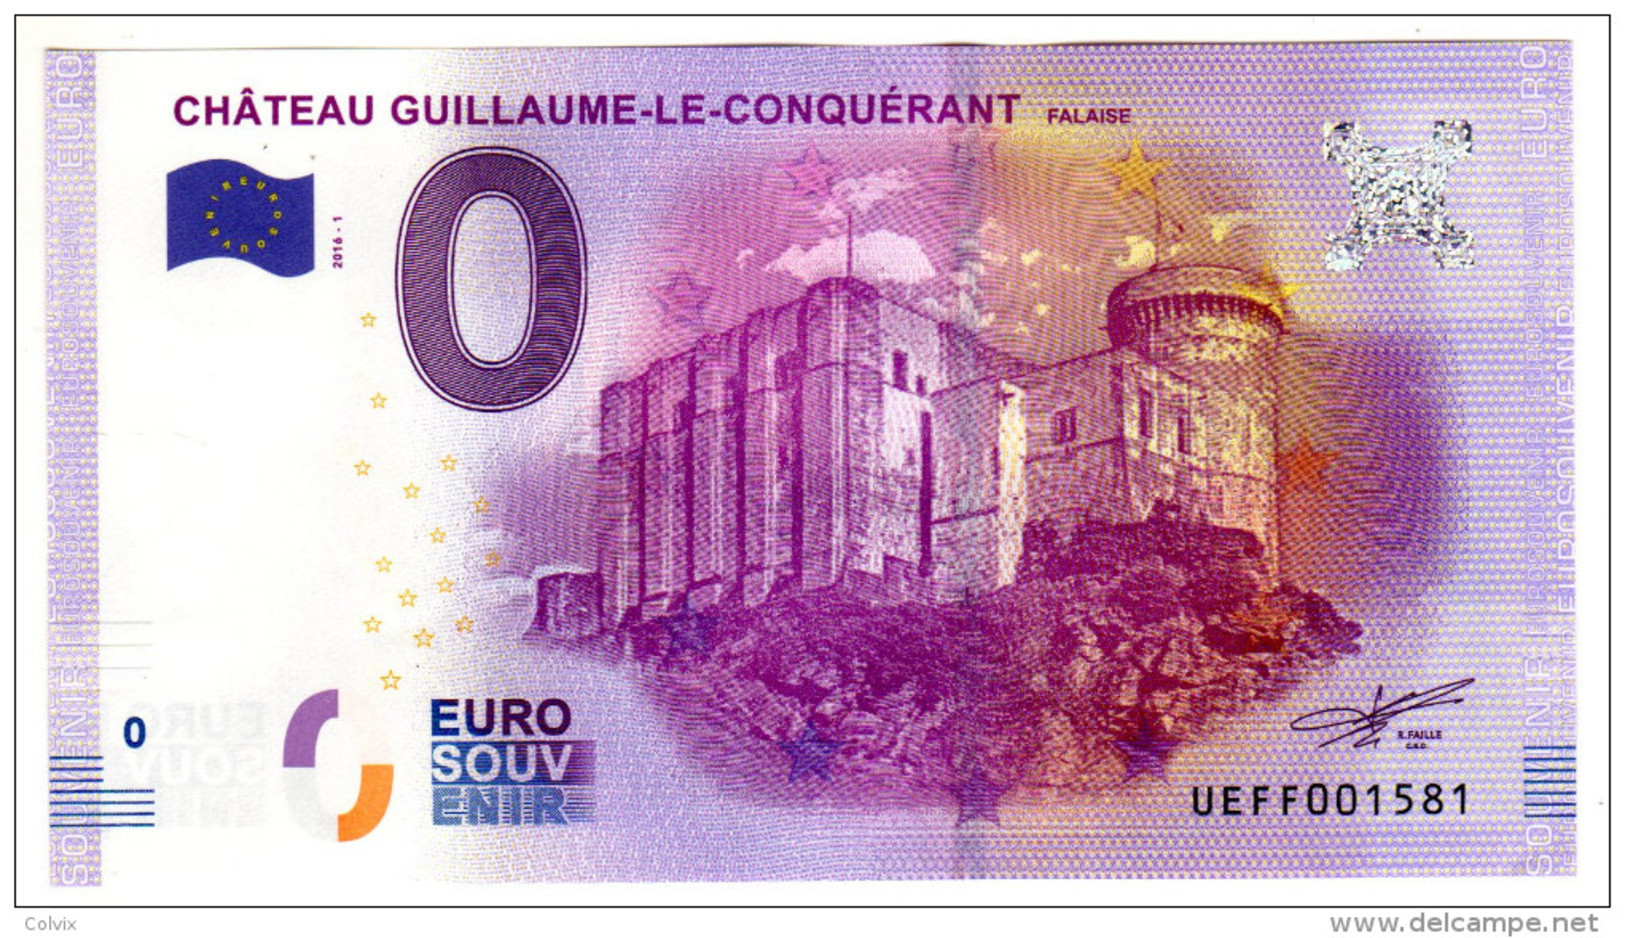 2016-1 BILLET TOURISTIQUE FRANCE 0 EURO SOUVENIR N°UEFF001580 CHATEAU GUILLAUME LE CONQUERANT - Pruebas Privadas